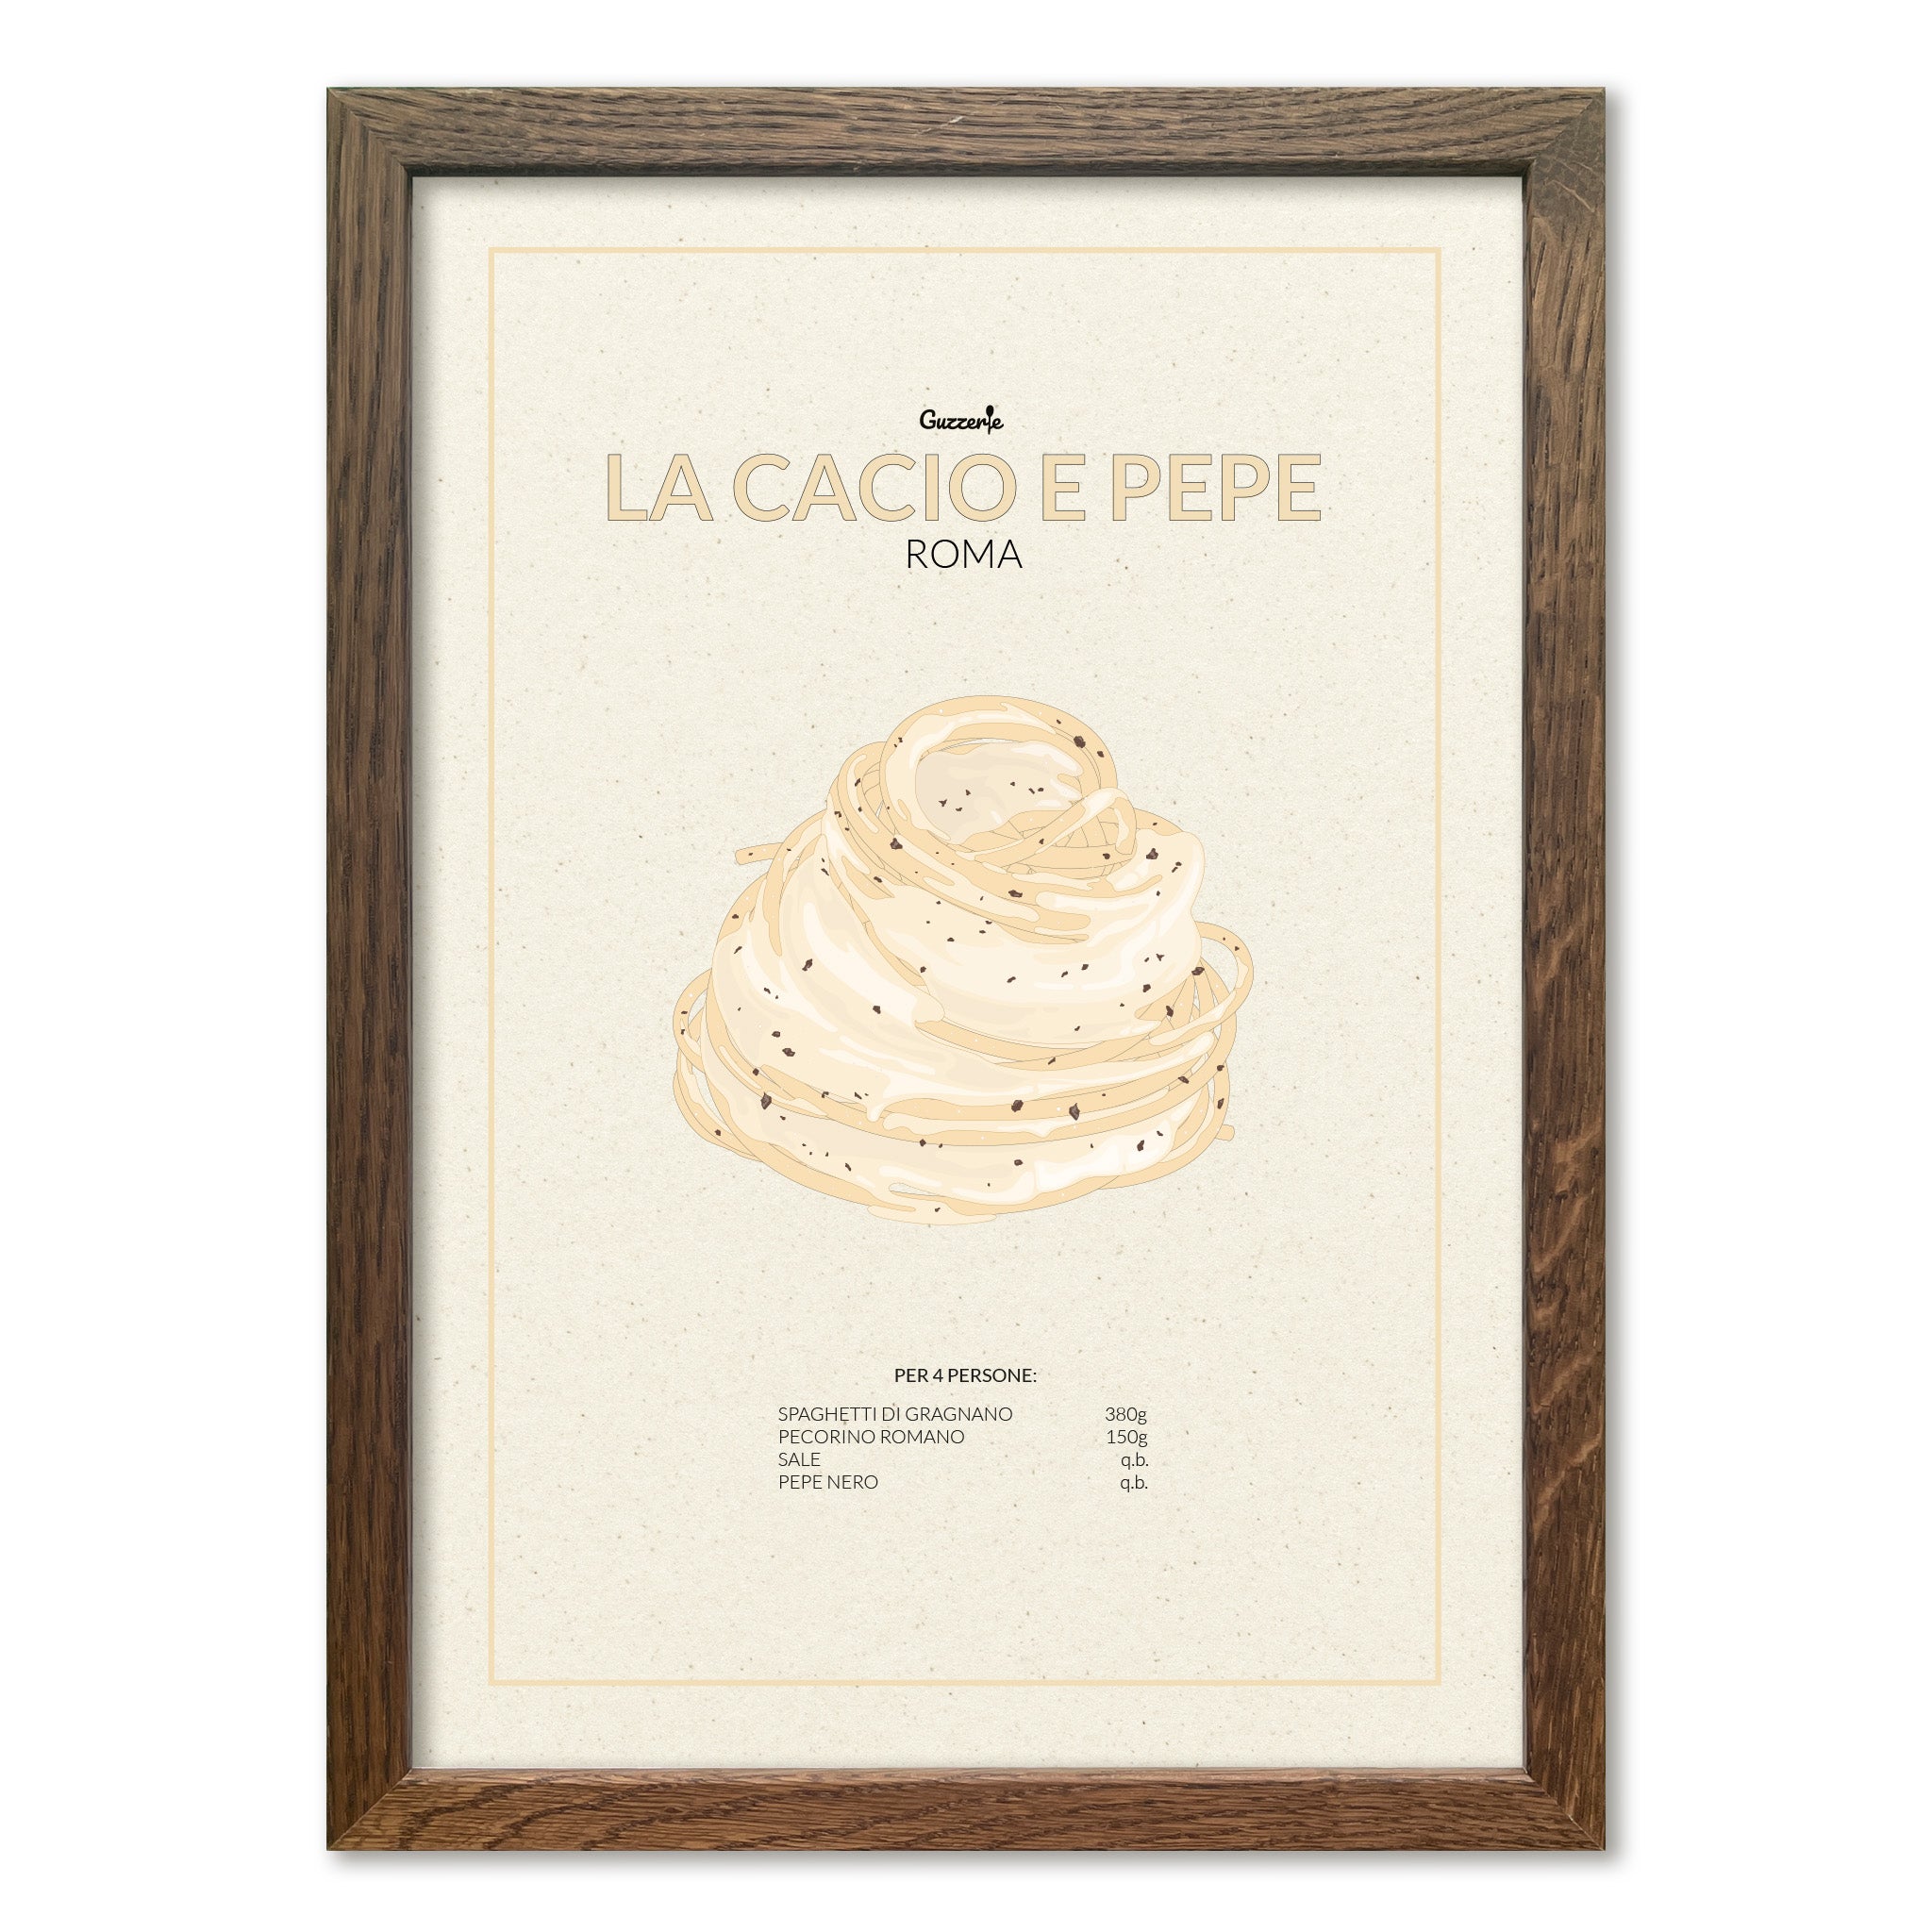 Iconic Poster of Pasta Cacio e Pepe | Guzzerie